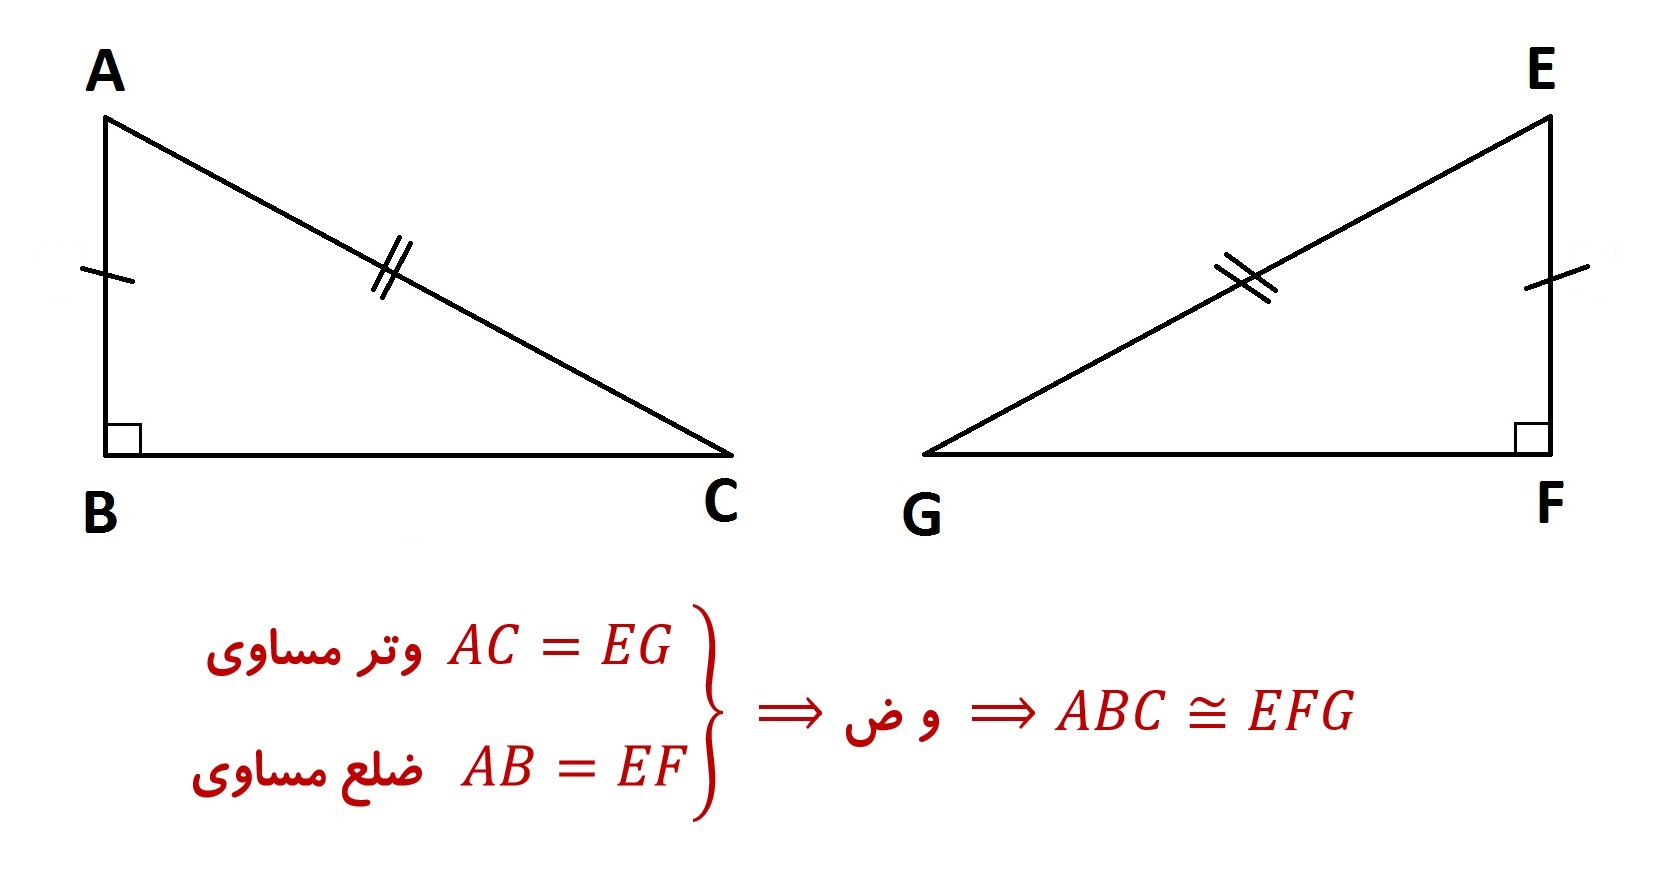 هم نهشتی مثلث های قائم الزاویه حالت وتر و یک ضلع - درس در خانه